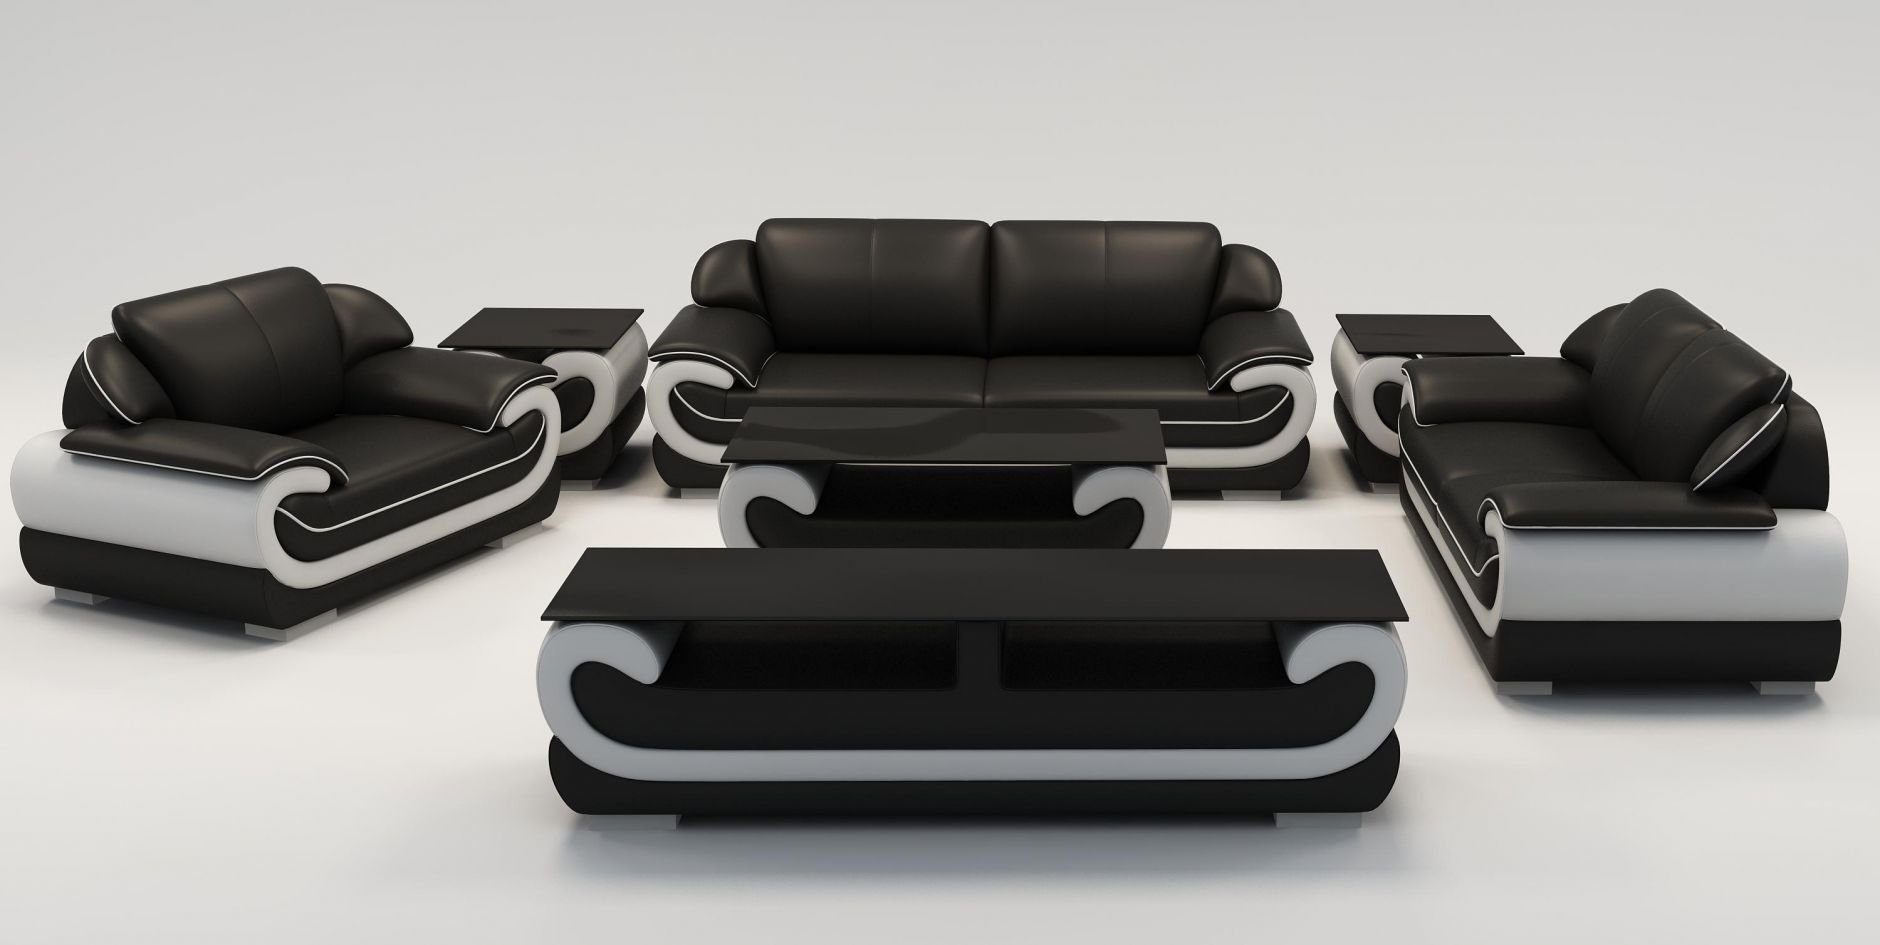 JVmoebel Sofa Sofas 3+2+1 Sitzer Set Design Sofas Polster Couchen Leder Relax, Made in Europe Schwarz/Weiß